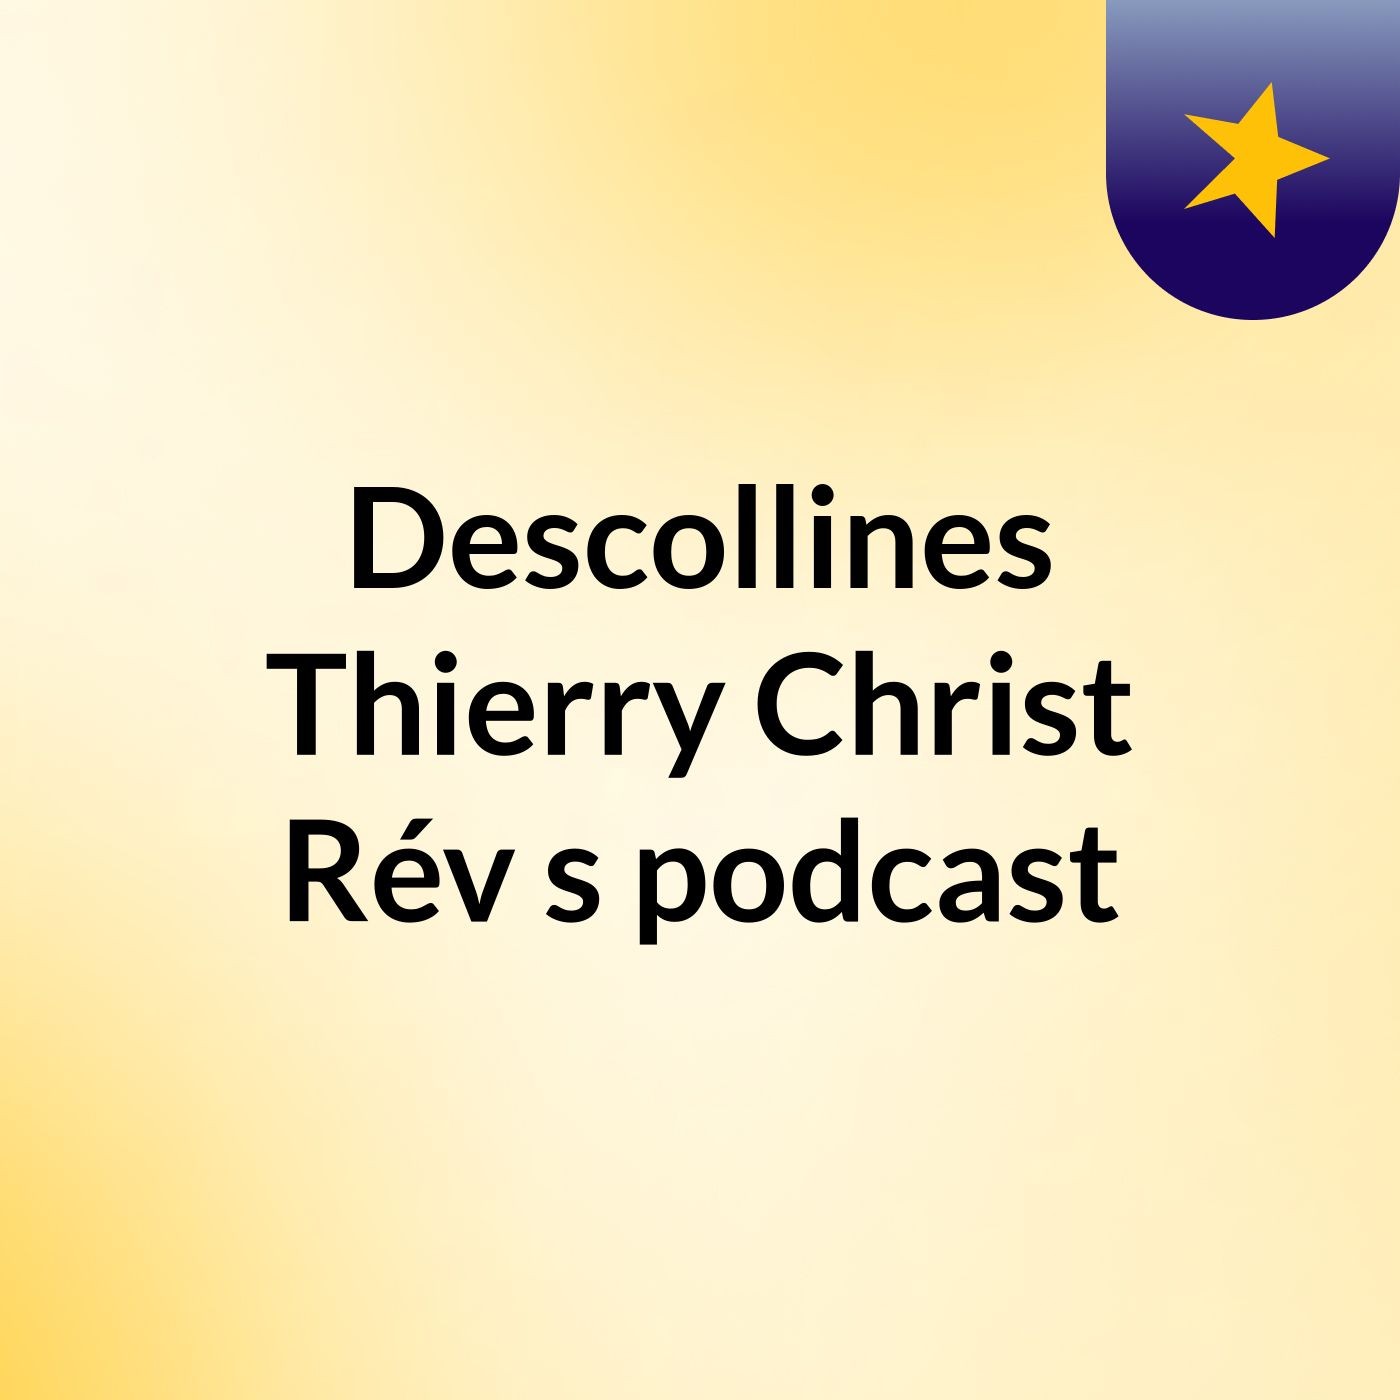 Descollines Thierry Christ Rév's podcast